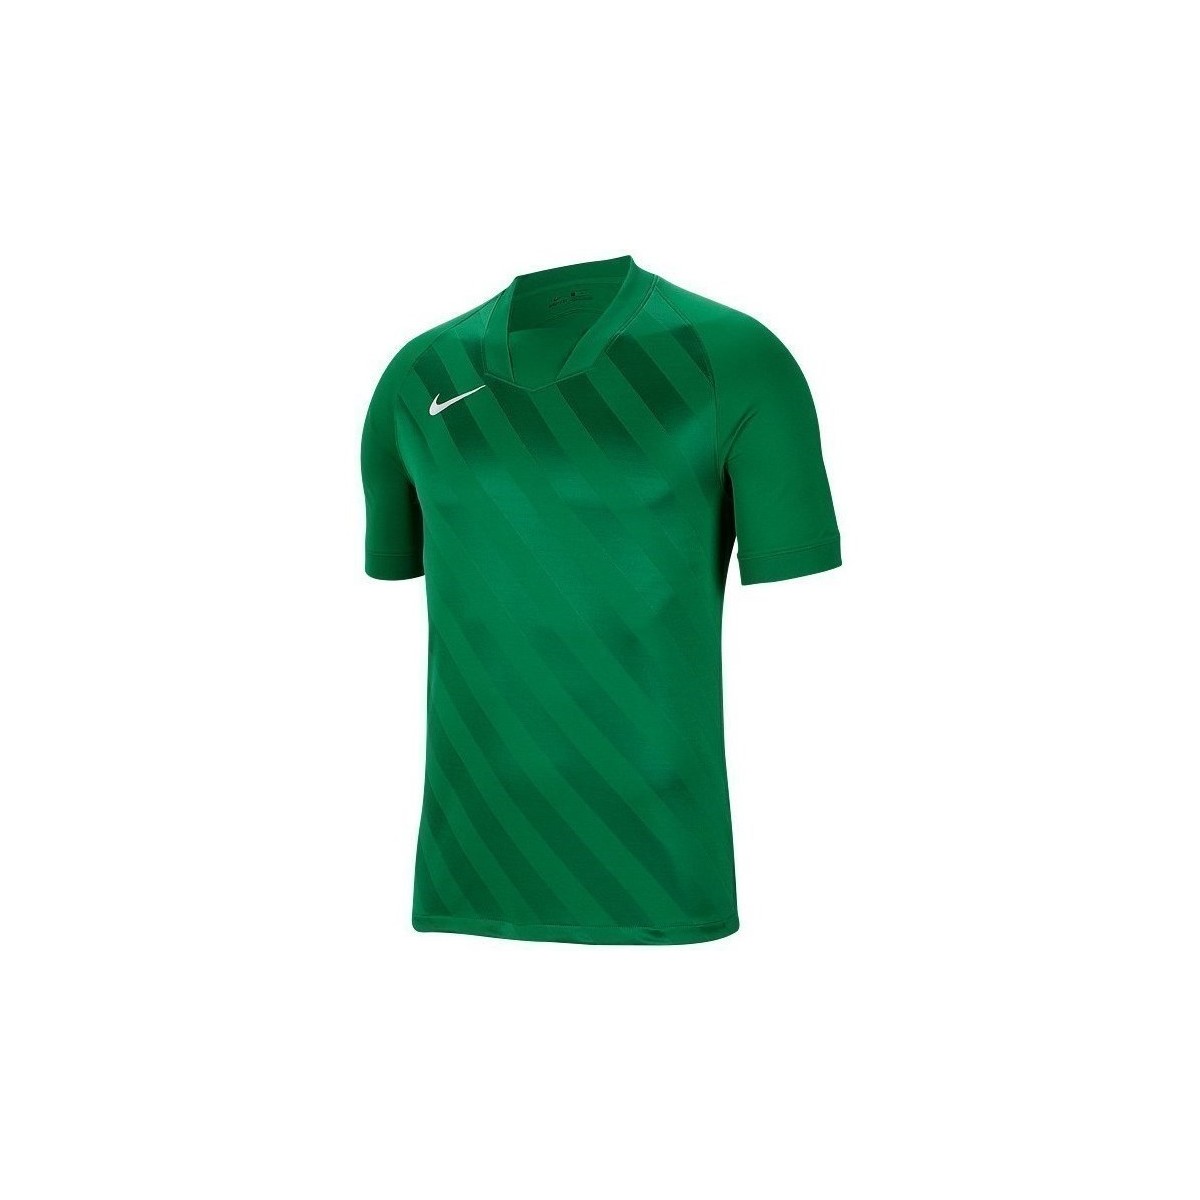 Textil Muži Trička s krátkým rukávem Nike Challenge Iii Zelená